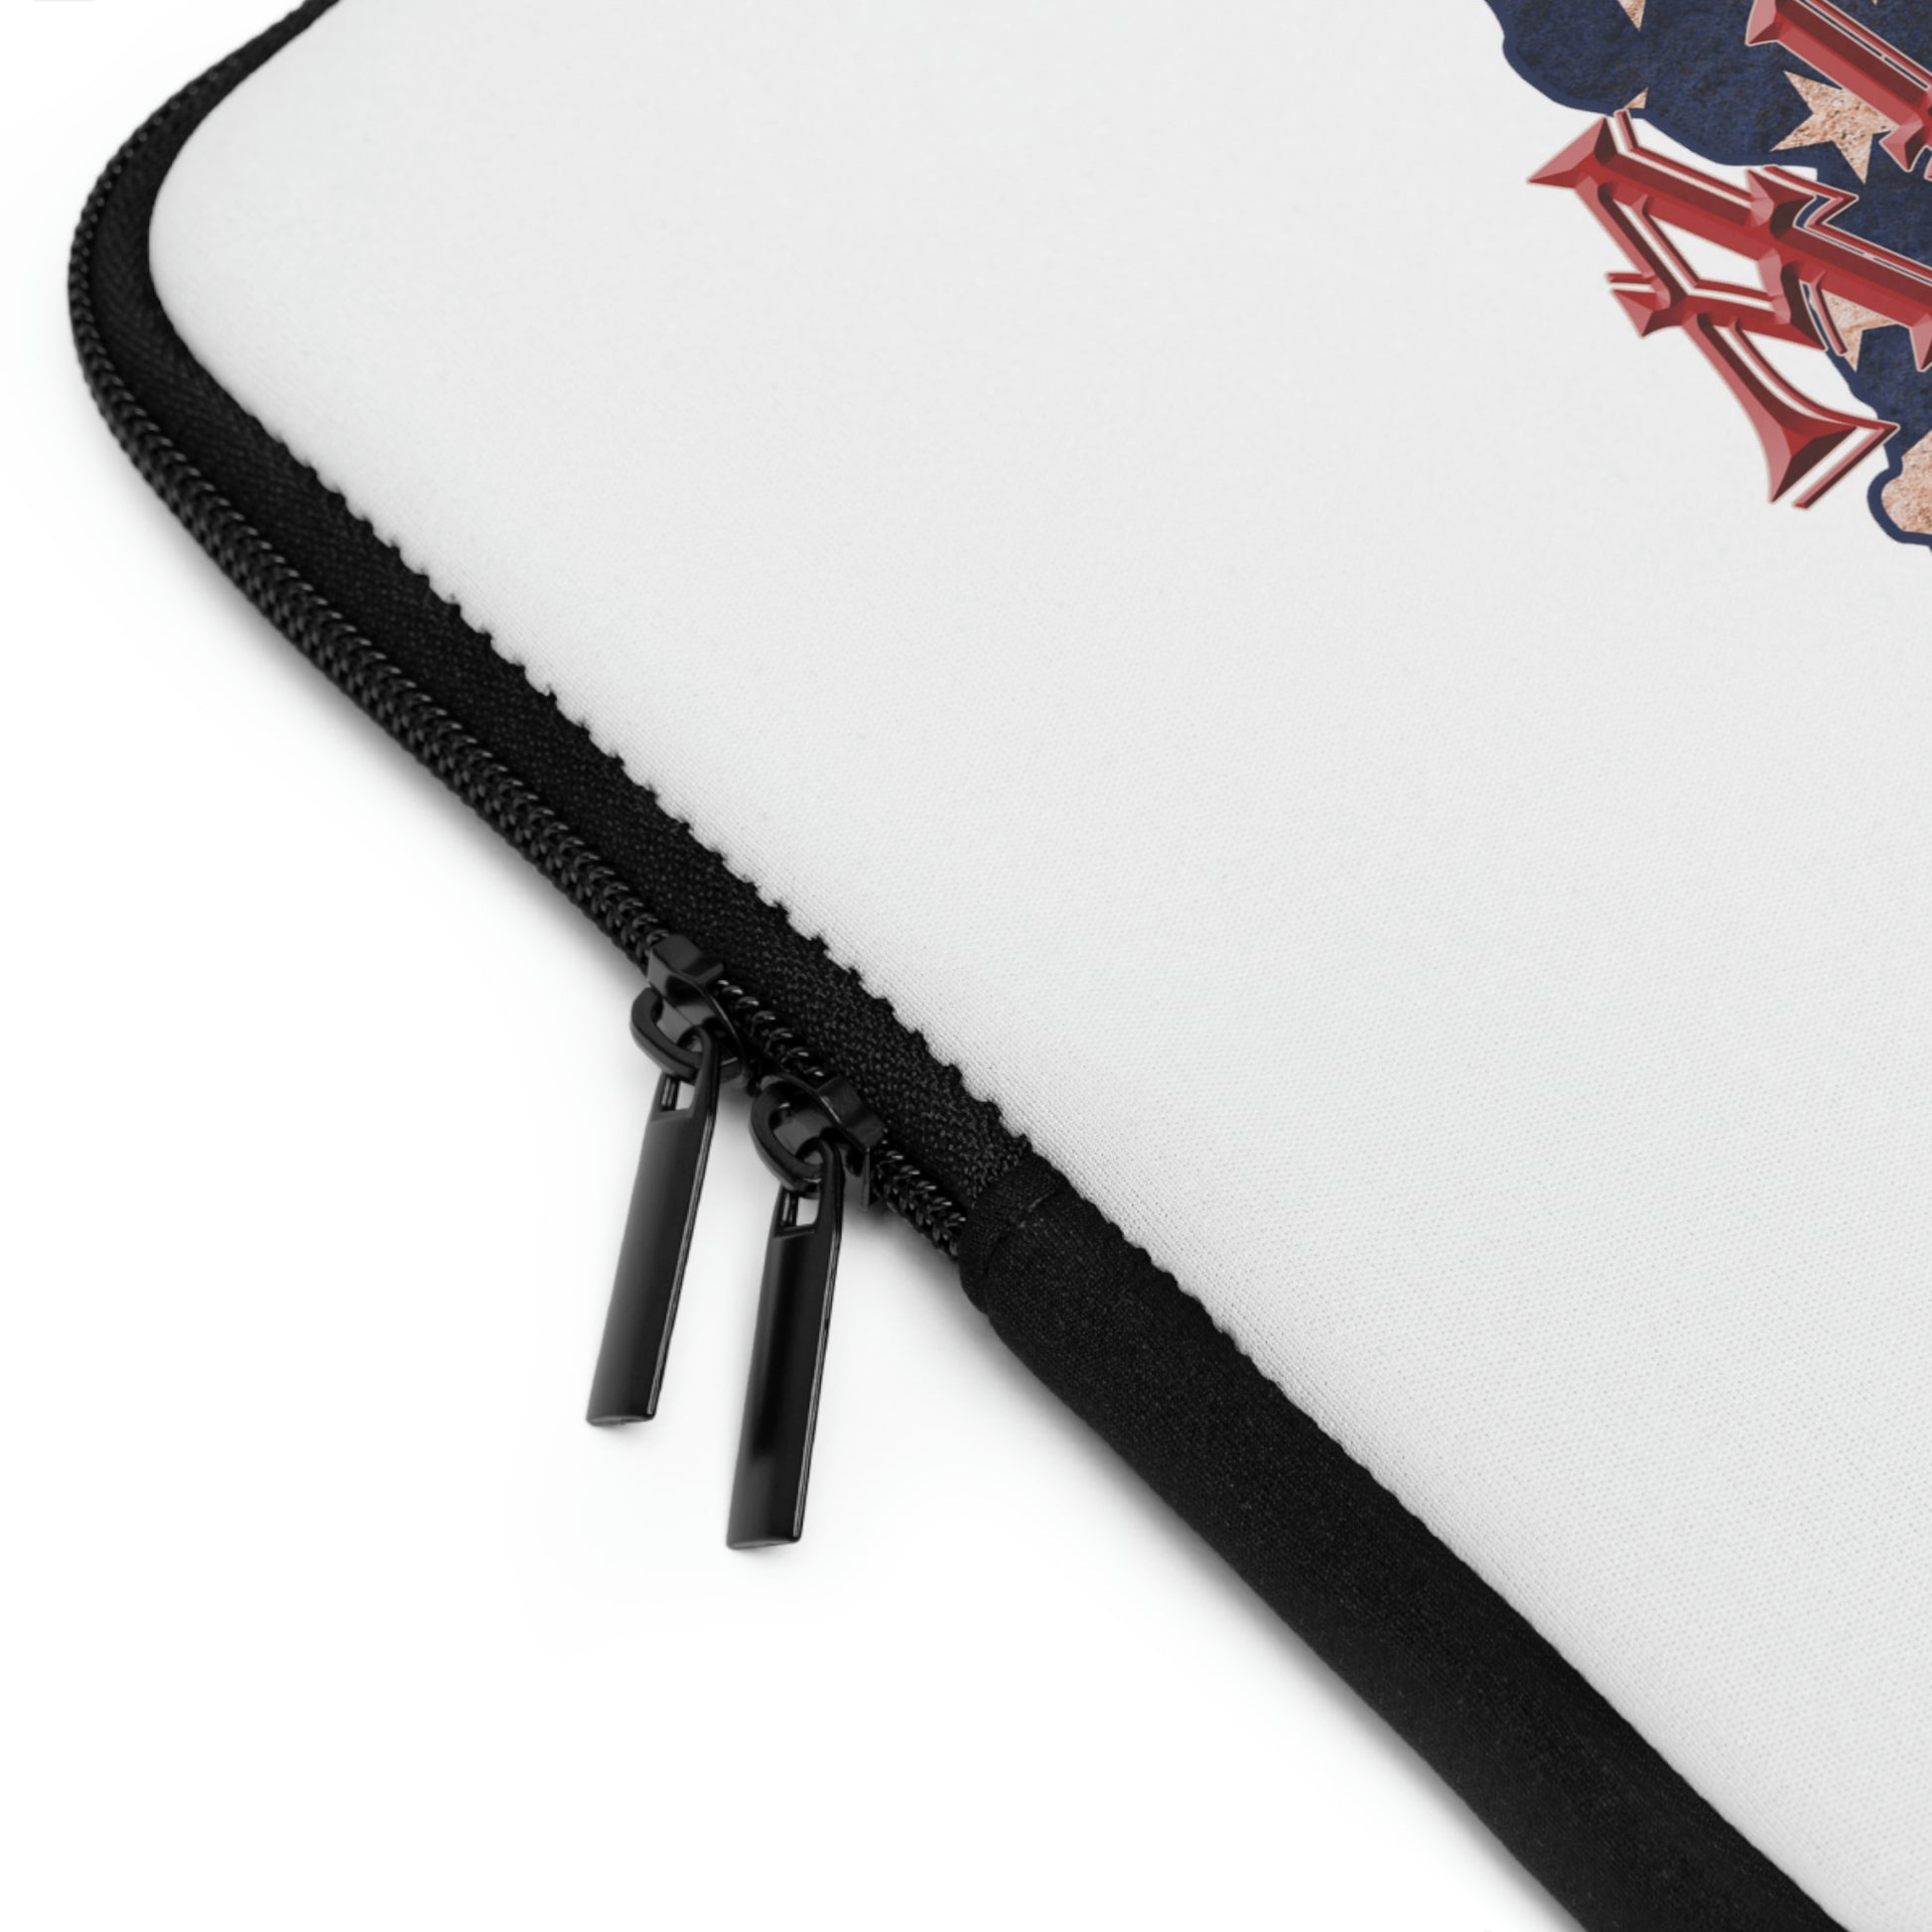 Arizona US Flag Print Laptop Sleeve